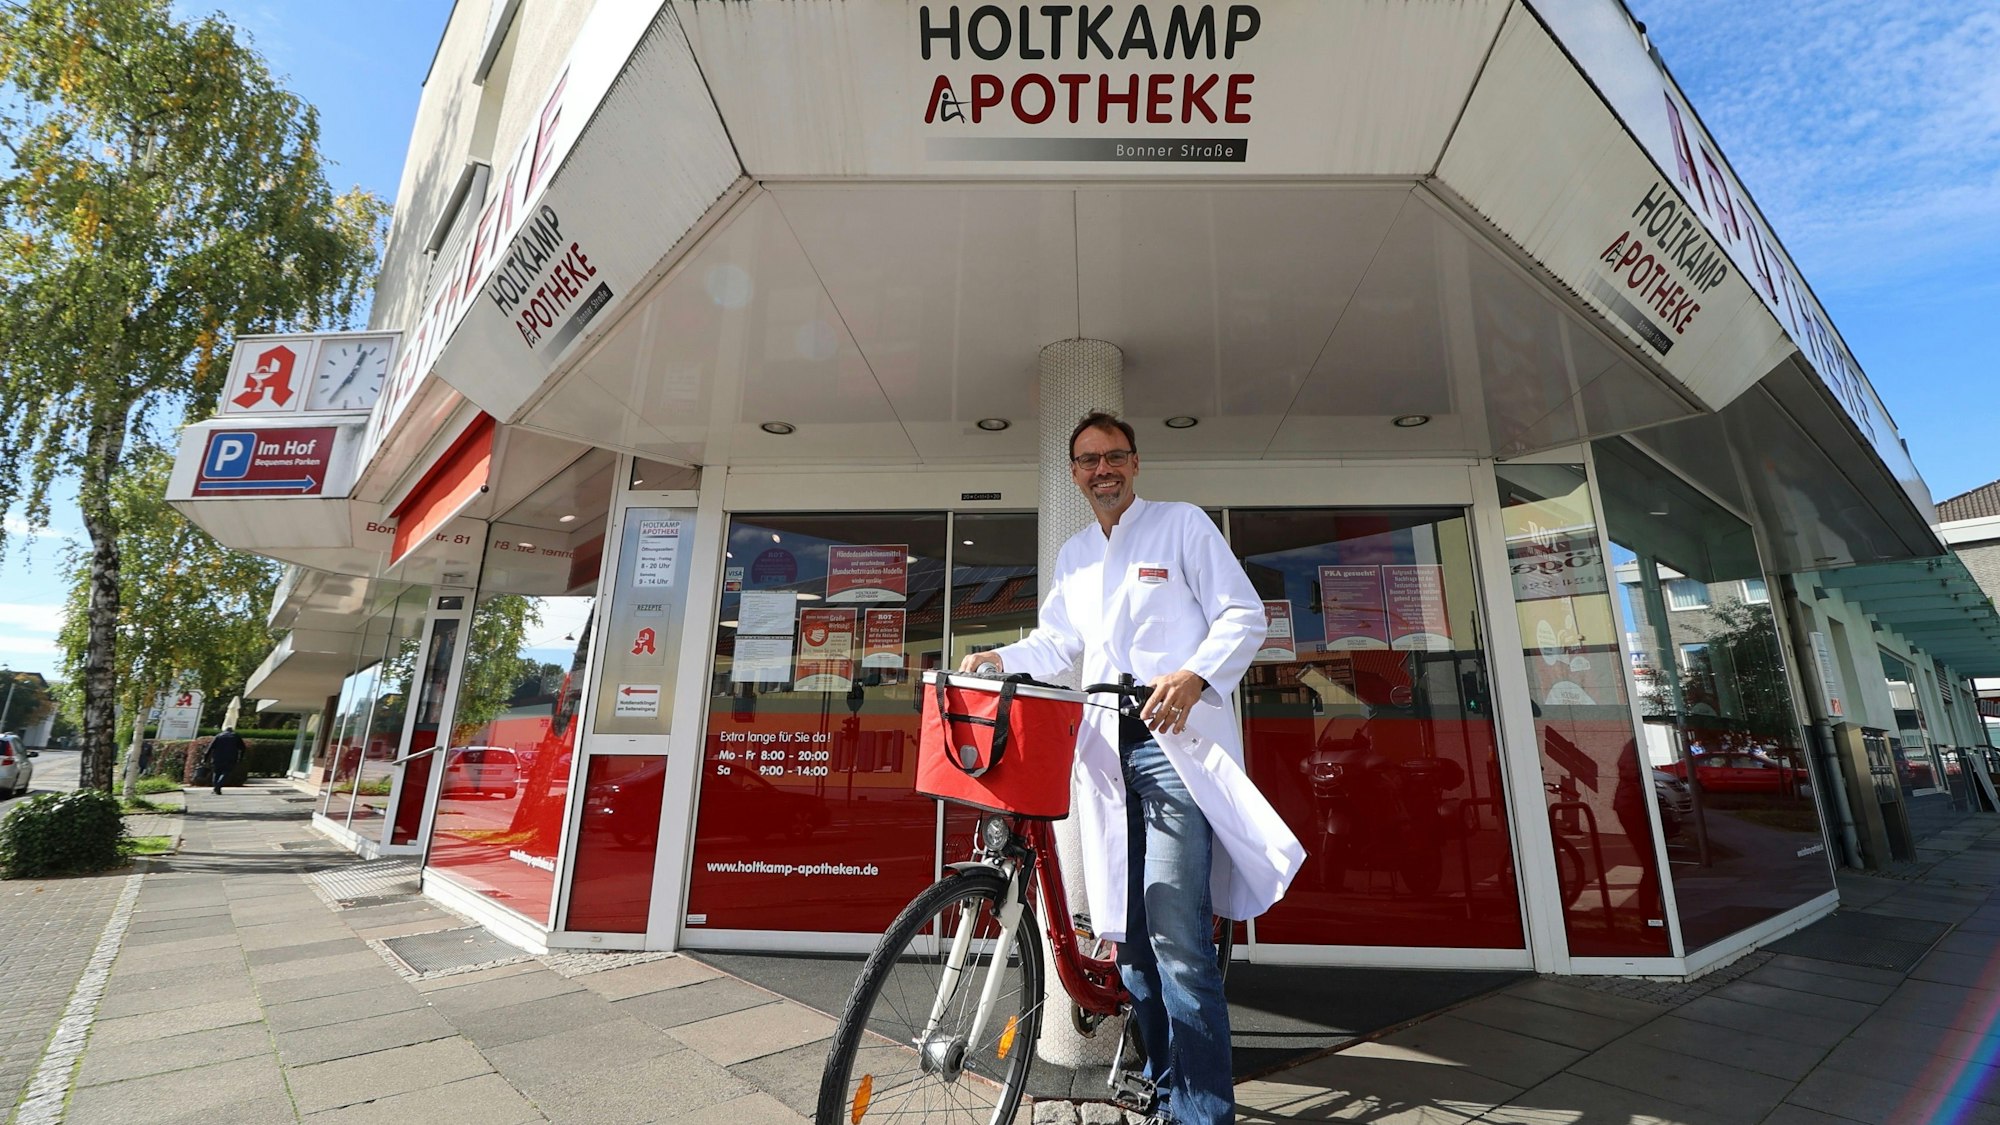 Ein Apotheker im weißen Arztkittel vor der Ladentür. Er steht neben einem roten Fahrrad.